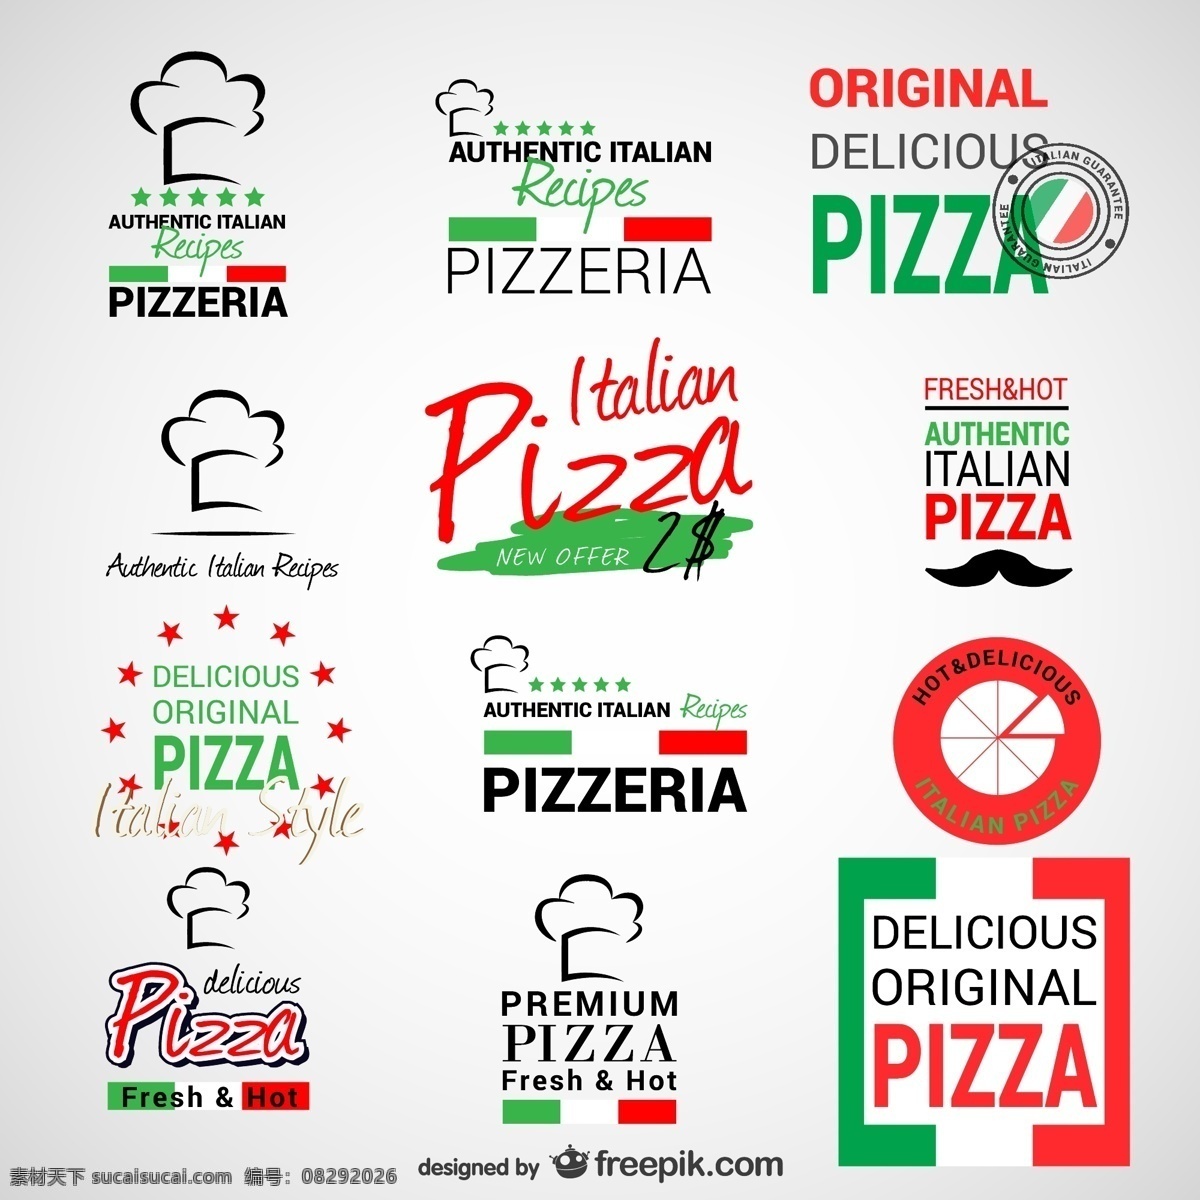 比萨 店 标志 设置 标识 食品 商业 餐厅 标志设计 印刷 交付 图形 图形设计 快餐 意大利 服务 元素 食品标识 白色